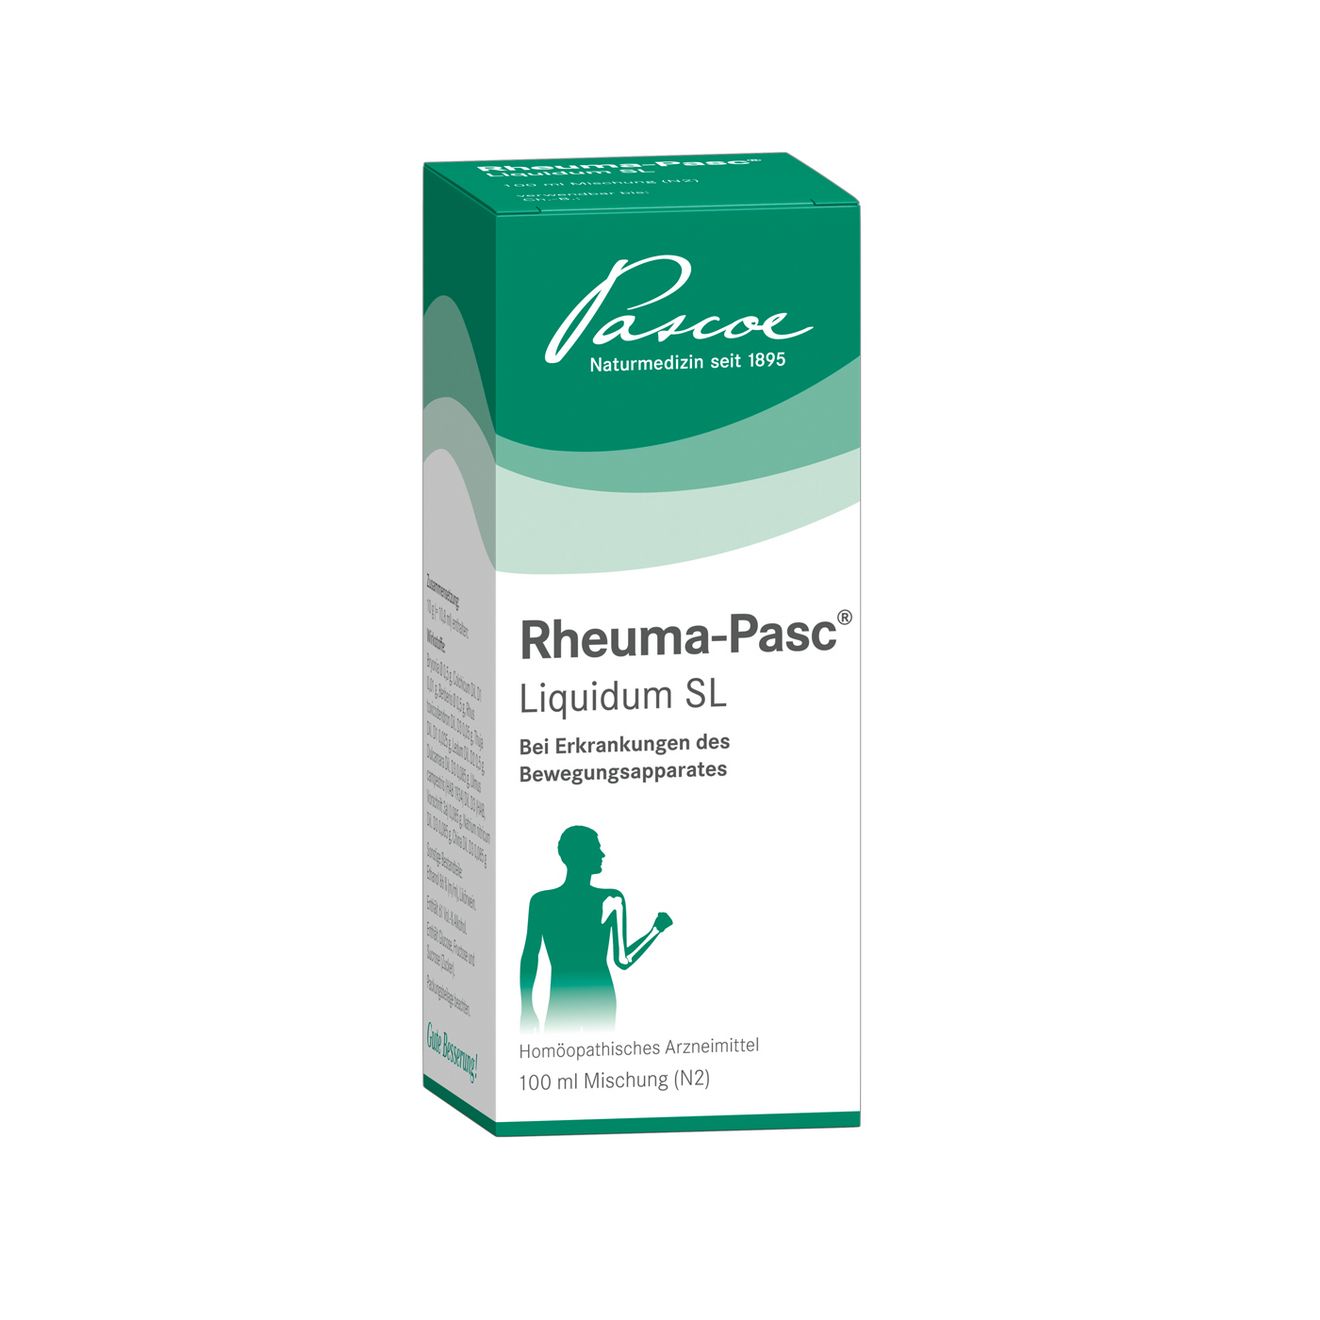 Rheuma-Pasc Liquidum SL 100 ml Packshot 00423930